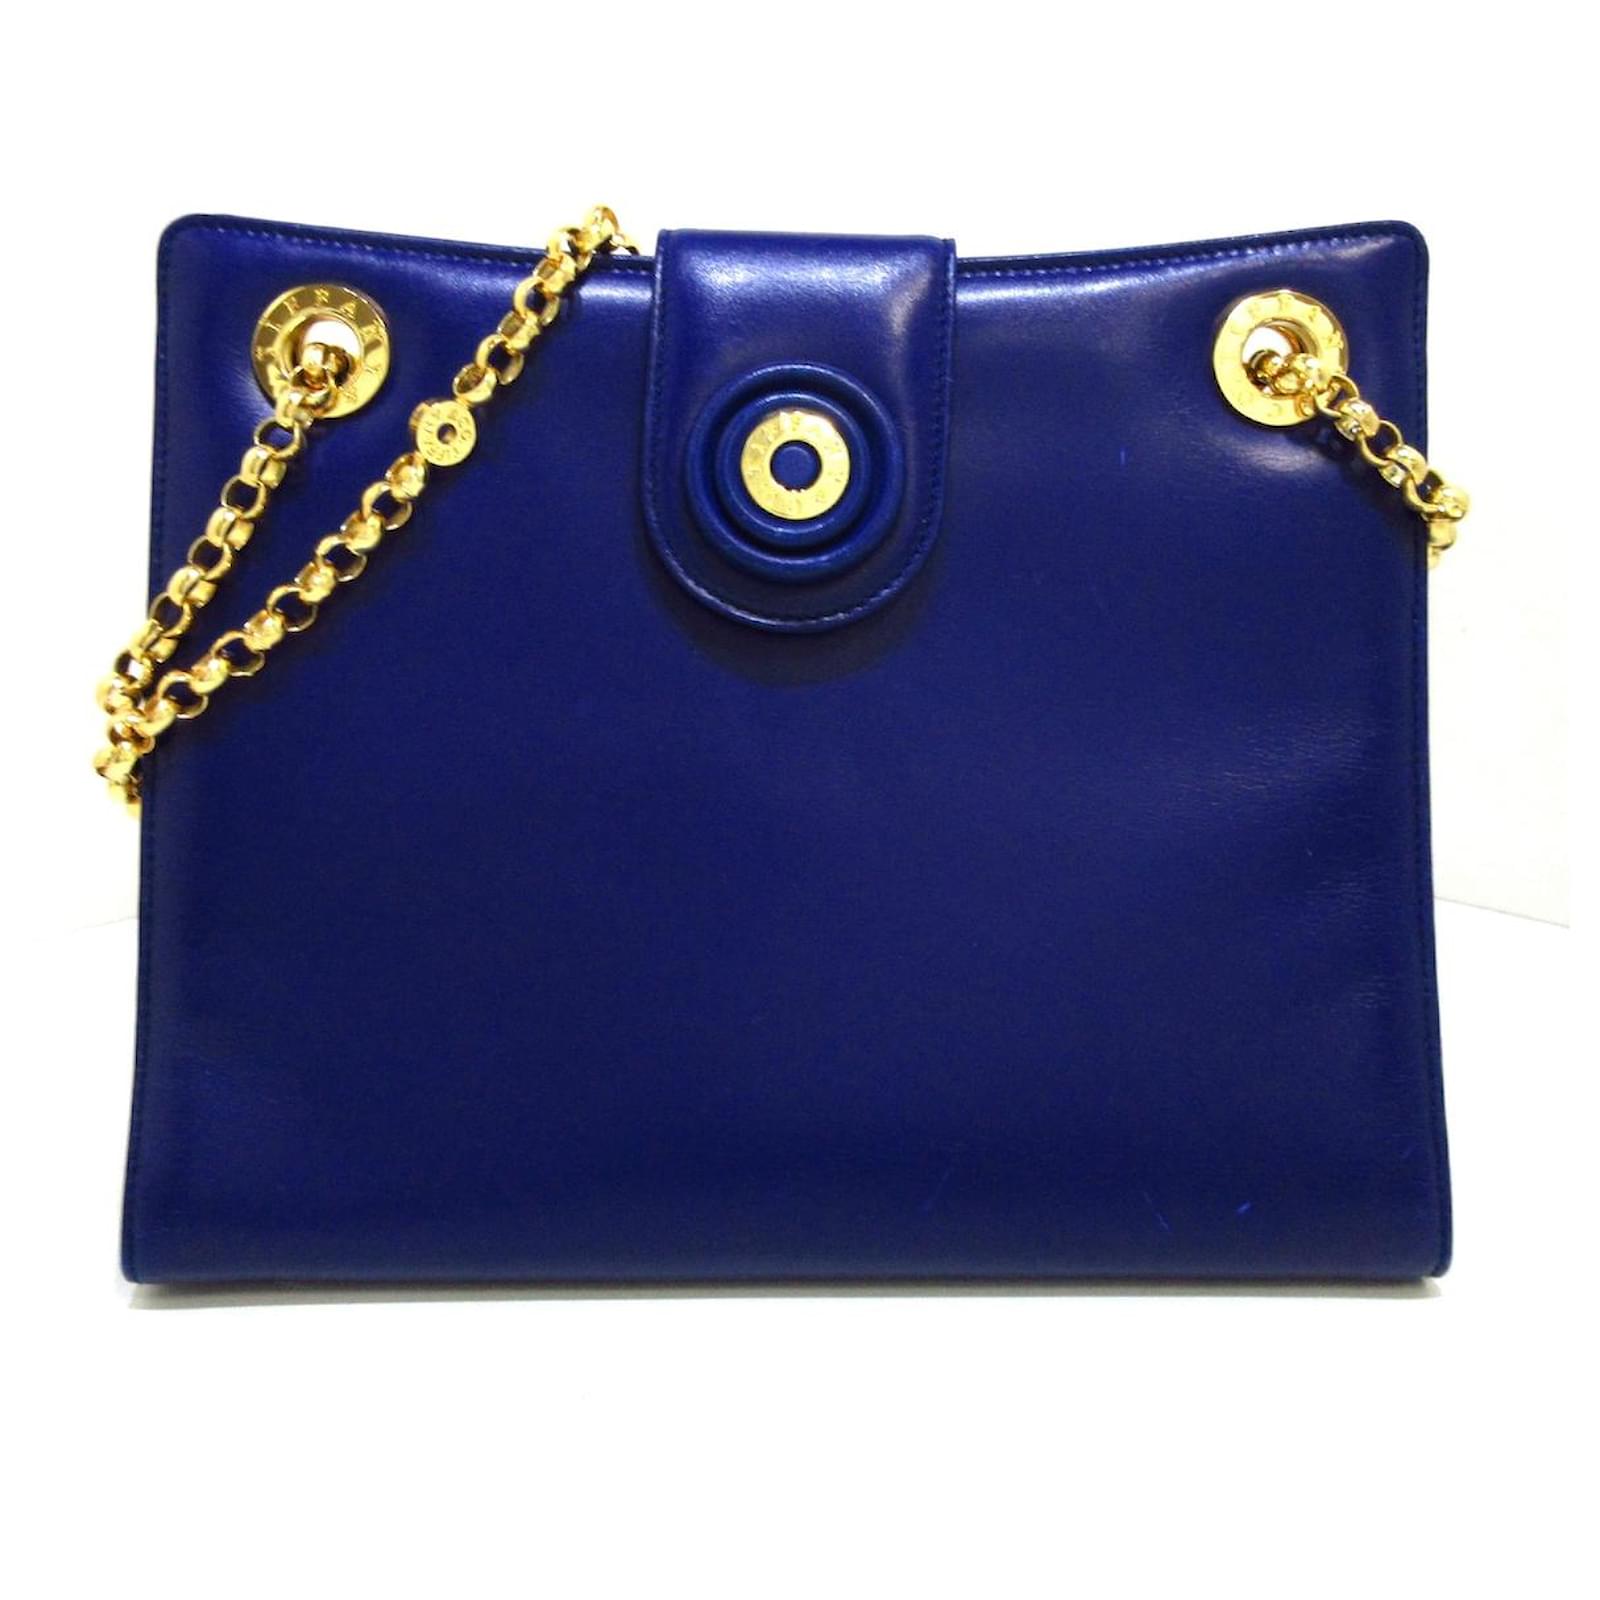 tiffany blue tiffany handbags